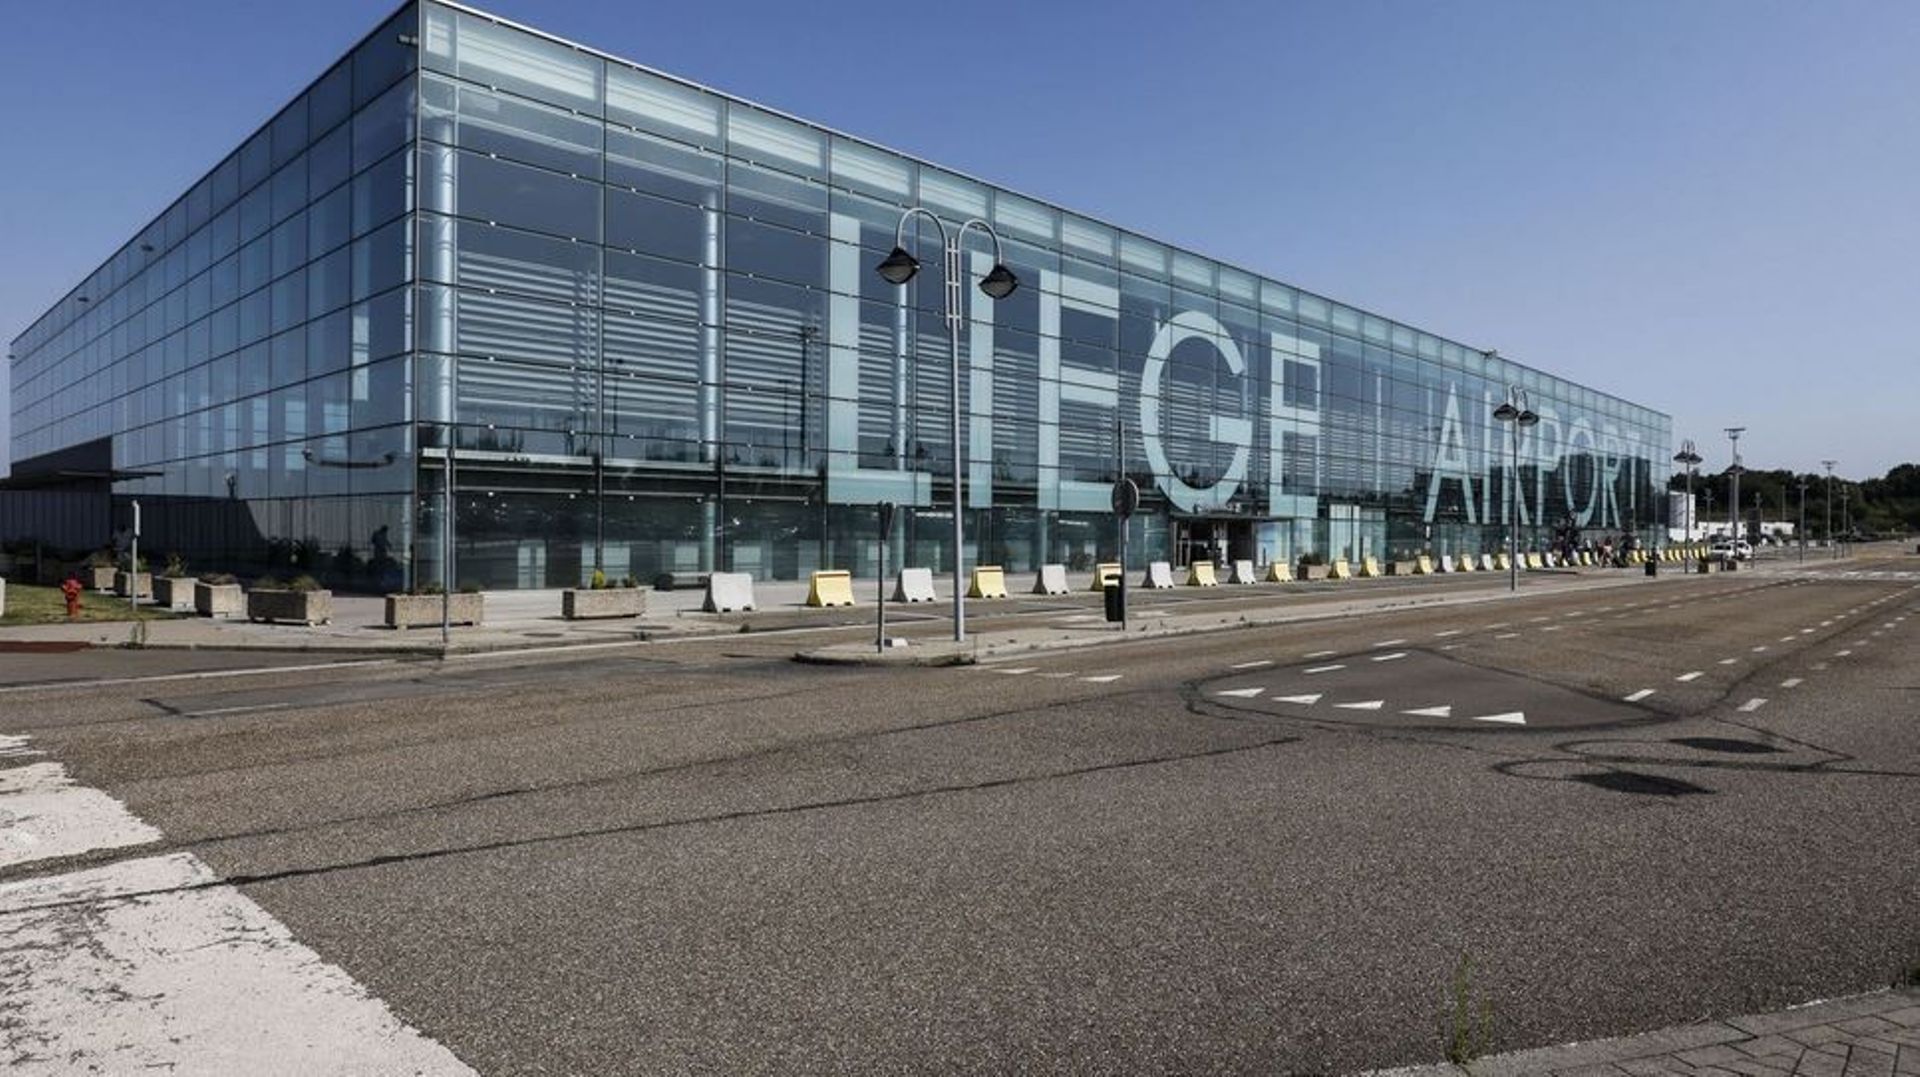 La commune d'Awans introduit un recours au Conseil d’État contre le permis de l'aéroport de Liège